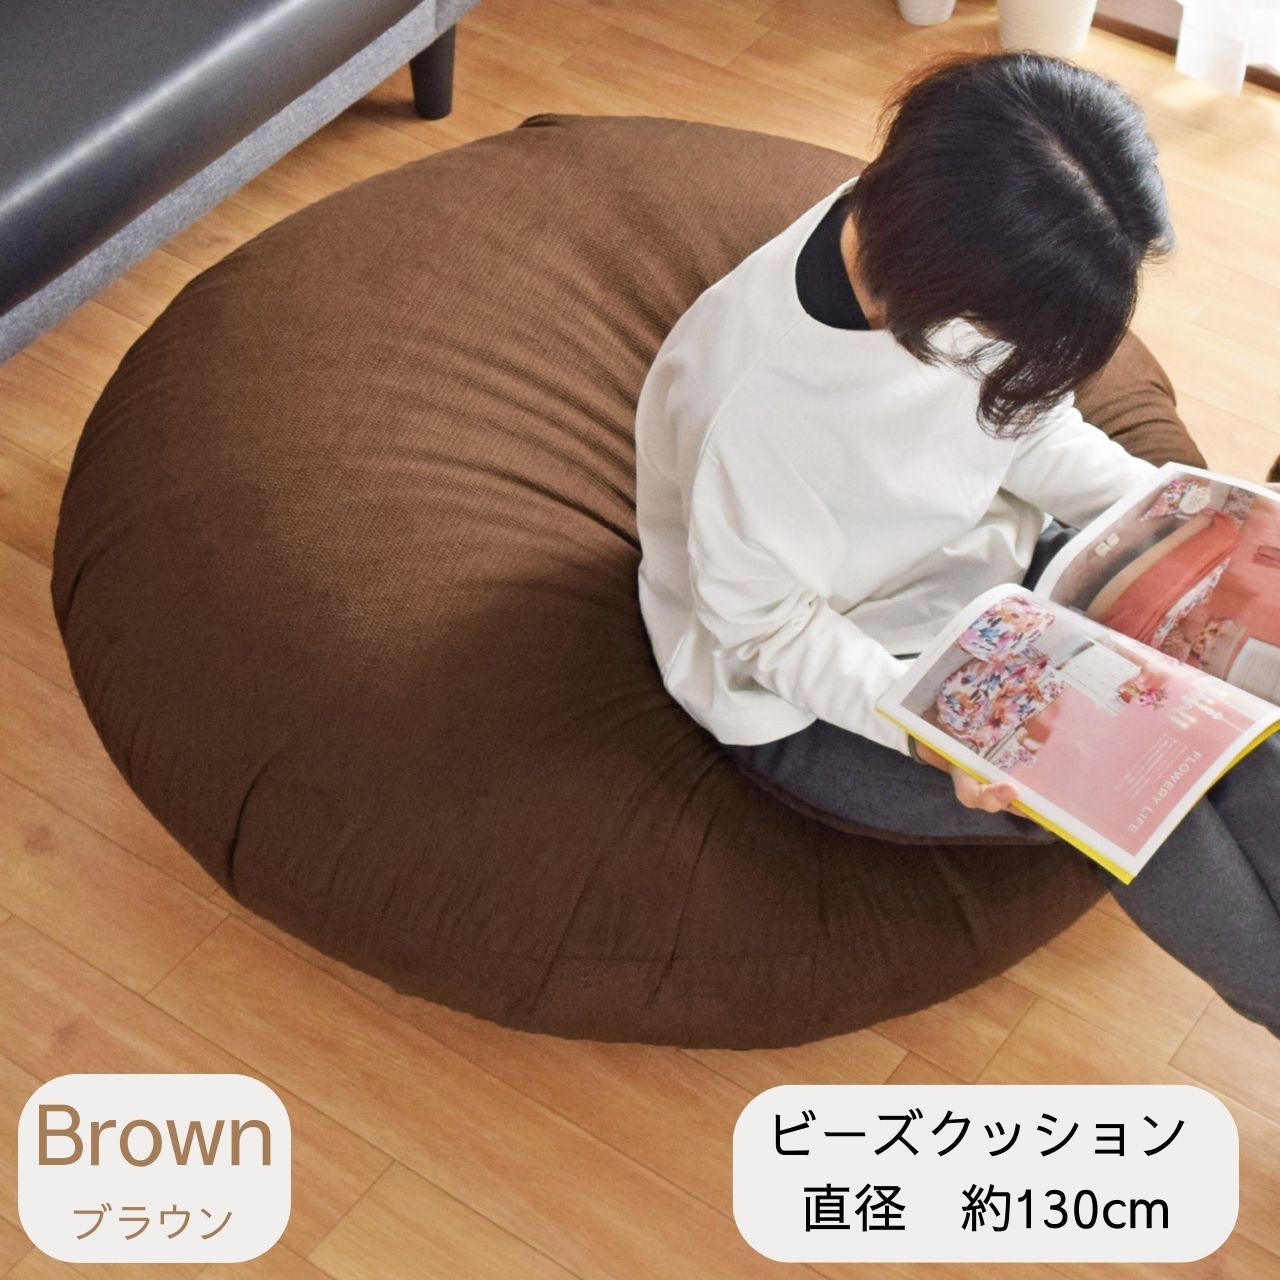 2 新品 ビーズクッション ブラウン 茶色 ソファ 北欧 円形 座椅子 